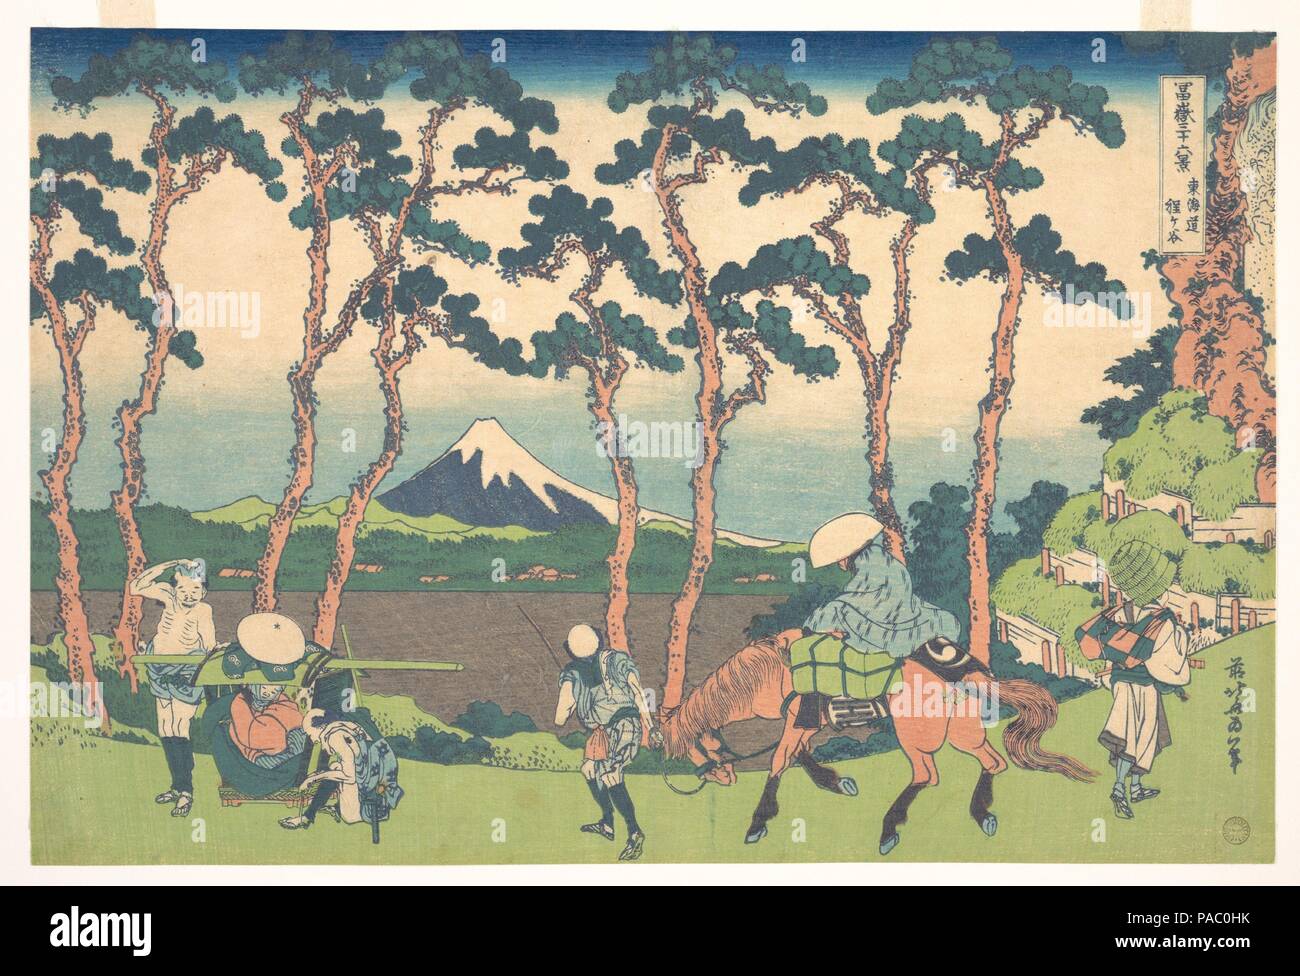 Hodogaya der Tokaido (Tokaido Hodogaya), aus der Serie 36 Ansichten des Berges Fuji (Fugaku sanjurokkei). Künstler: Katsushika Hokusai (Japanisch, Tokyo (EDO) 1760-1849 Tokyo (EDO)). Kultur: Japan. Abmessungen: H. 9 3/4 in. (24,8 cm); W. 14 9/16 in. (37 cm). Datum: Ca. 1830-32. Mount Fuji ist von alten geschlossenen Kiefern, die entlang der Autobahn als Schatten und Schutz für Reisende gepflanzt wurden. Die Lage dieser Szene ist wahrscheinlich die Gondazaka und Shinanozaka, Hügel, die Grenze der Musashi und Suruga Provinzen. Sänfte Träger auf der linken Ruhen nach dem Hügel überquert. Die t Stockfoto